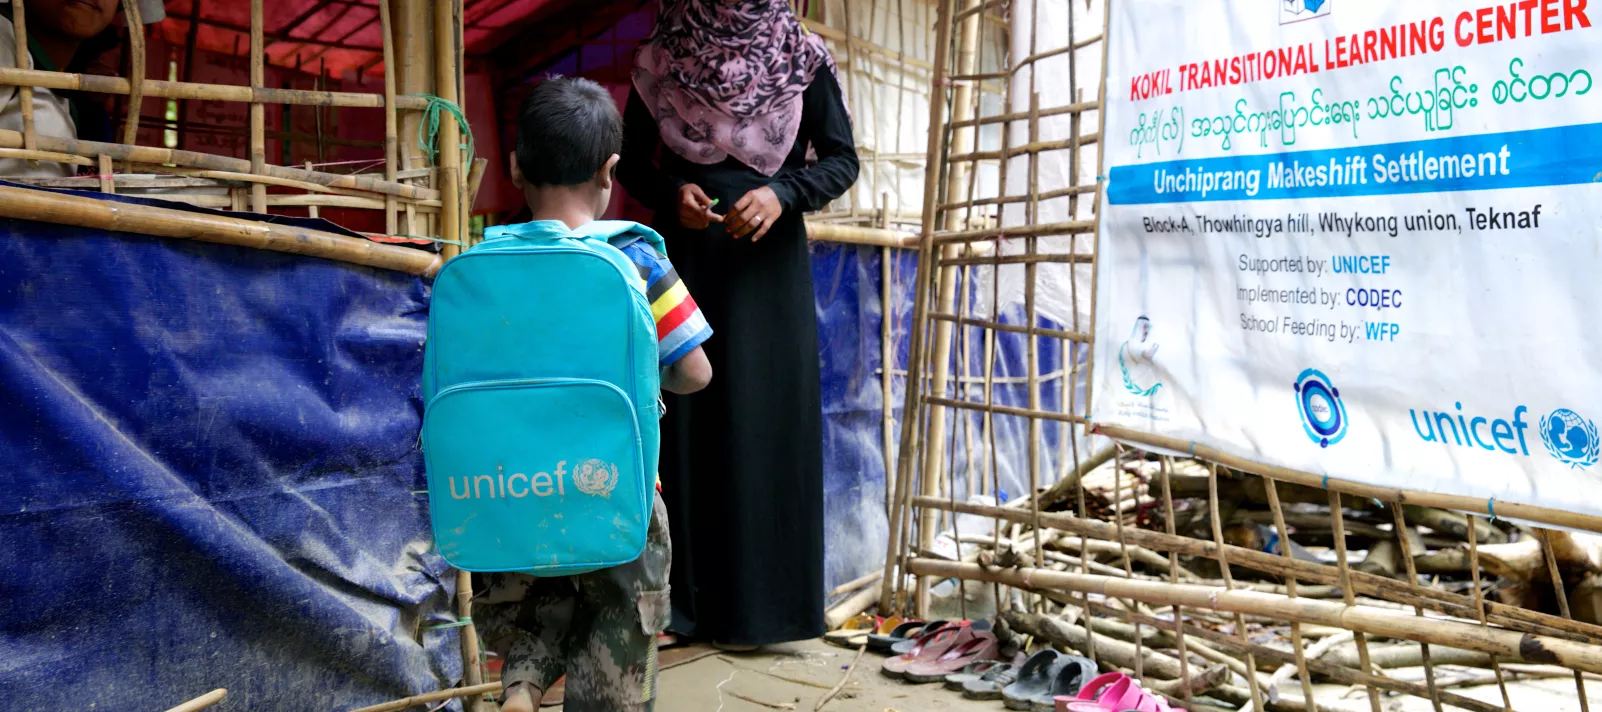 Um menino rohingya chega para aulas em um centro de aprendizado estabelecido pelo UNICEF em um campo de refugiados. Ele tem uma mochila com o logotipo do UNICEF.